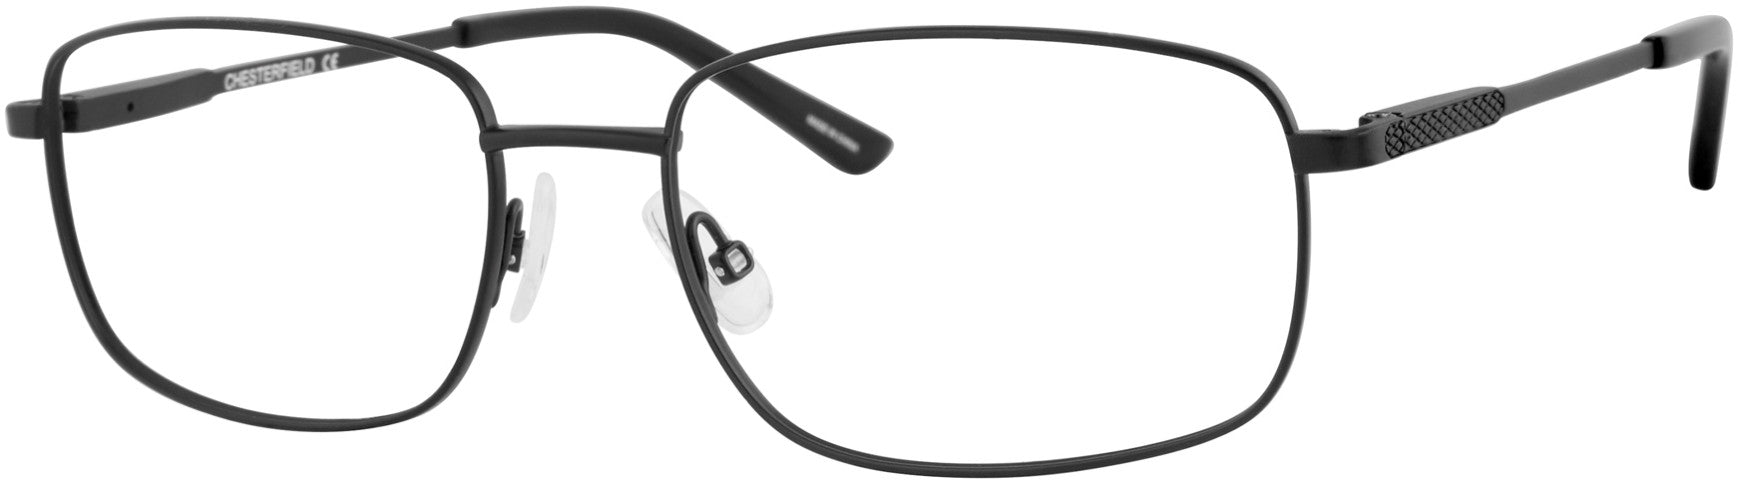  Chesterfield 73Xl/T Rectangular Eyeglasses 0003-0003  Matte Black (00 Demo Lens)